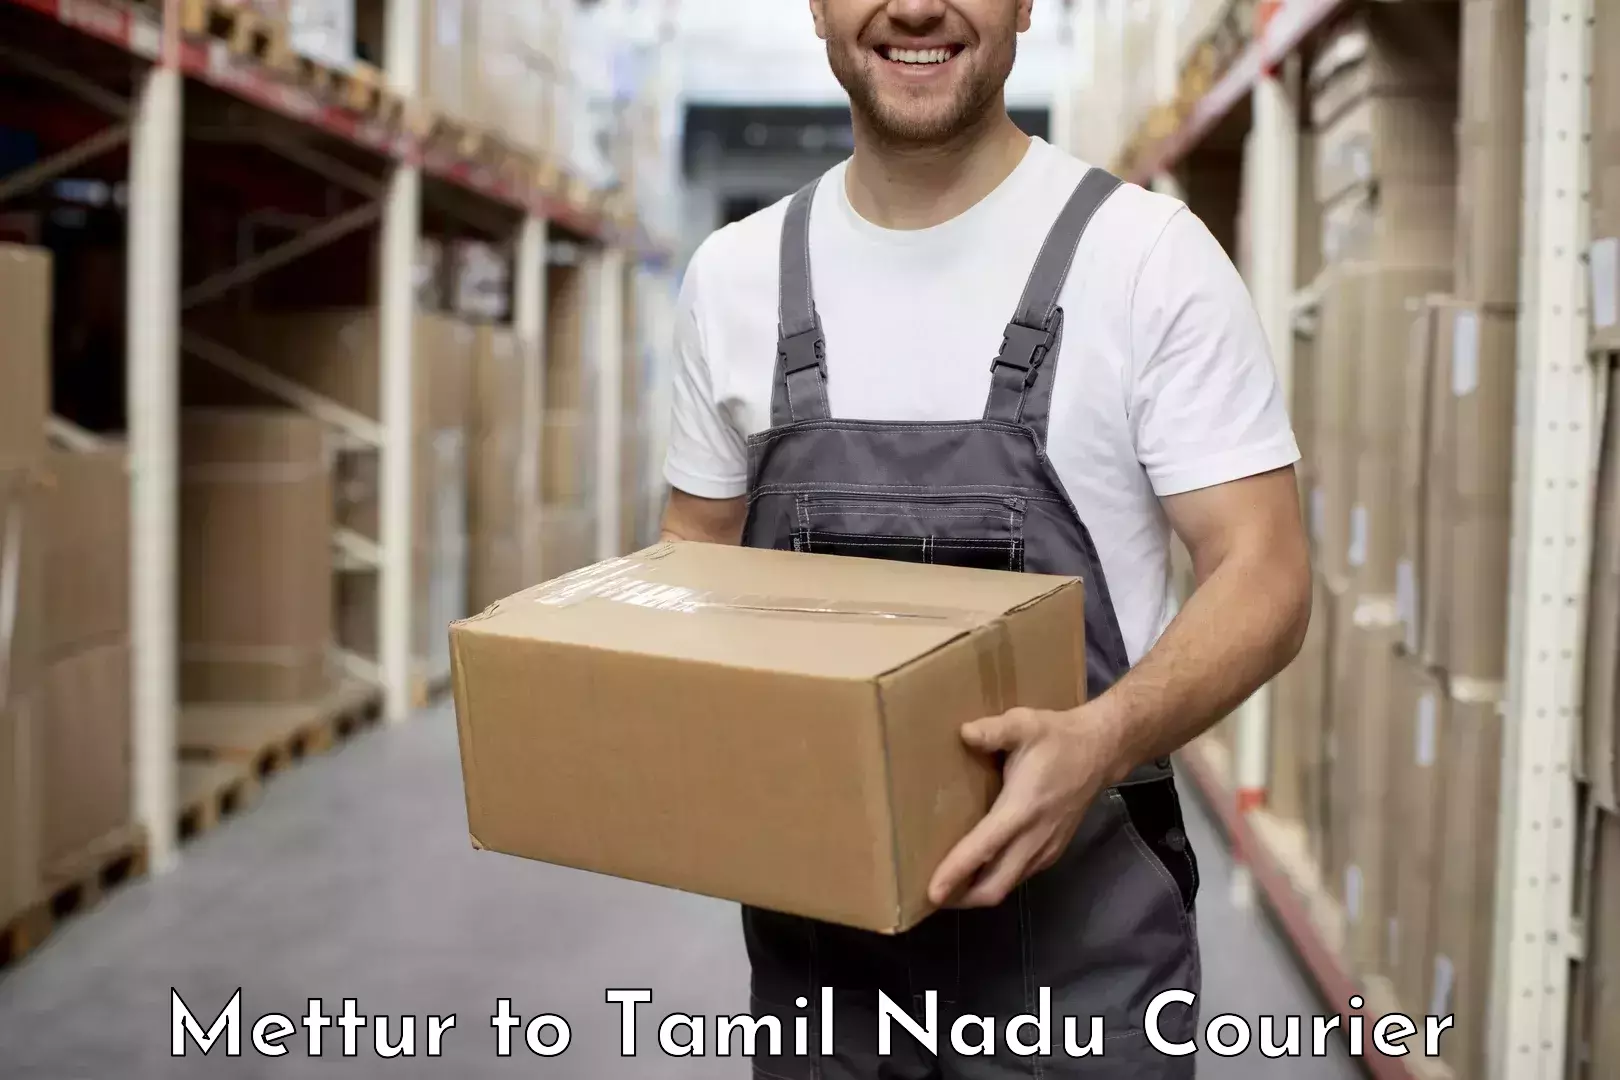 Efficient order fulfillment Mettur to Tamil Nadu